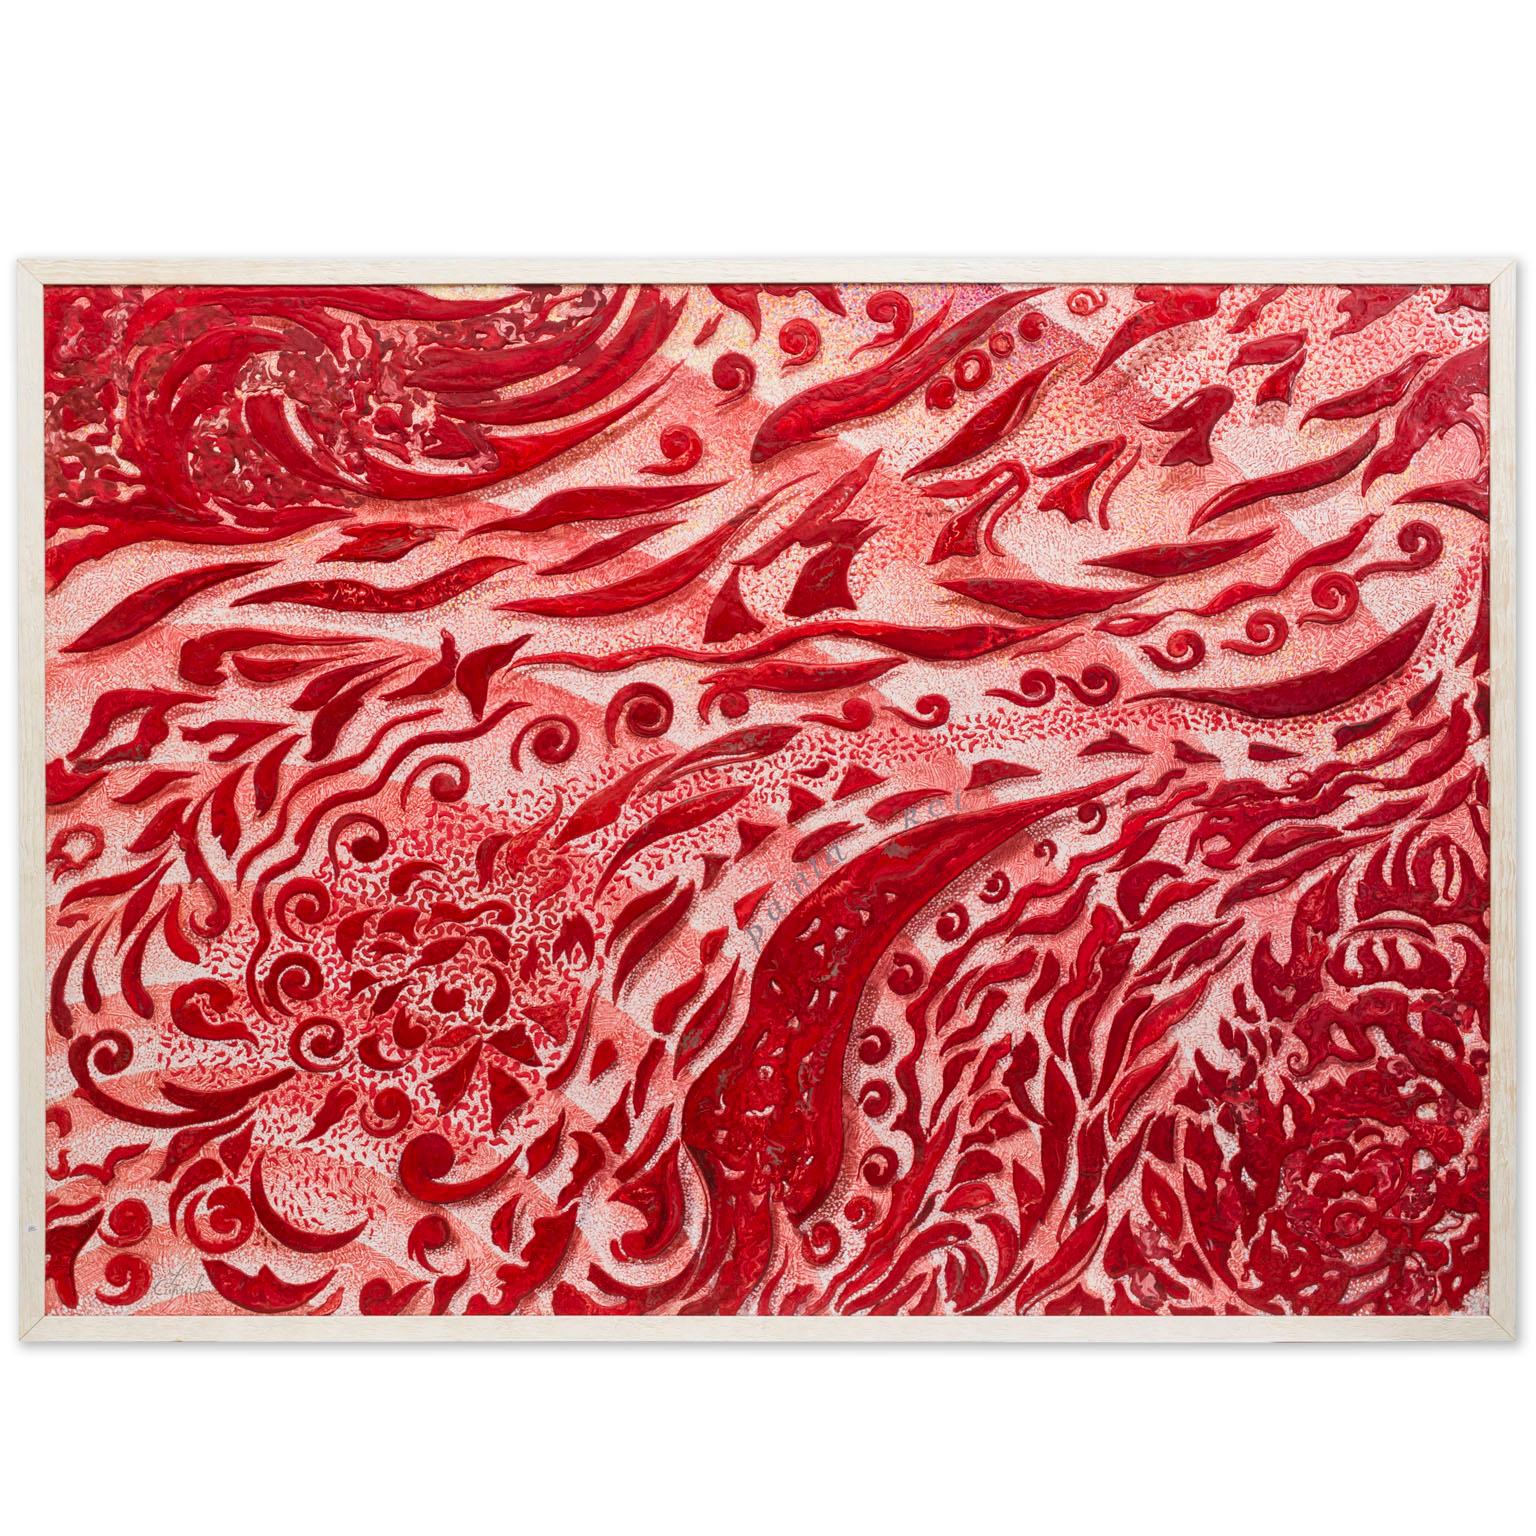  Wandteppich Moderne rote Kunstdekoration handgefertigt in Italien von Cupioli verfügbar